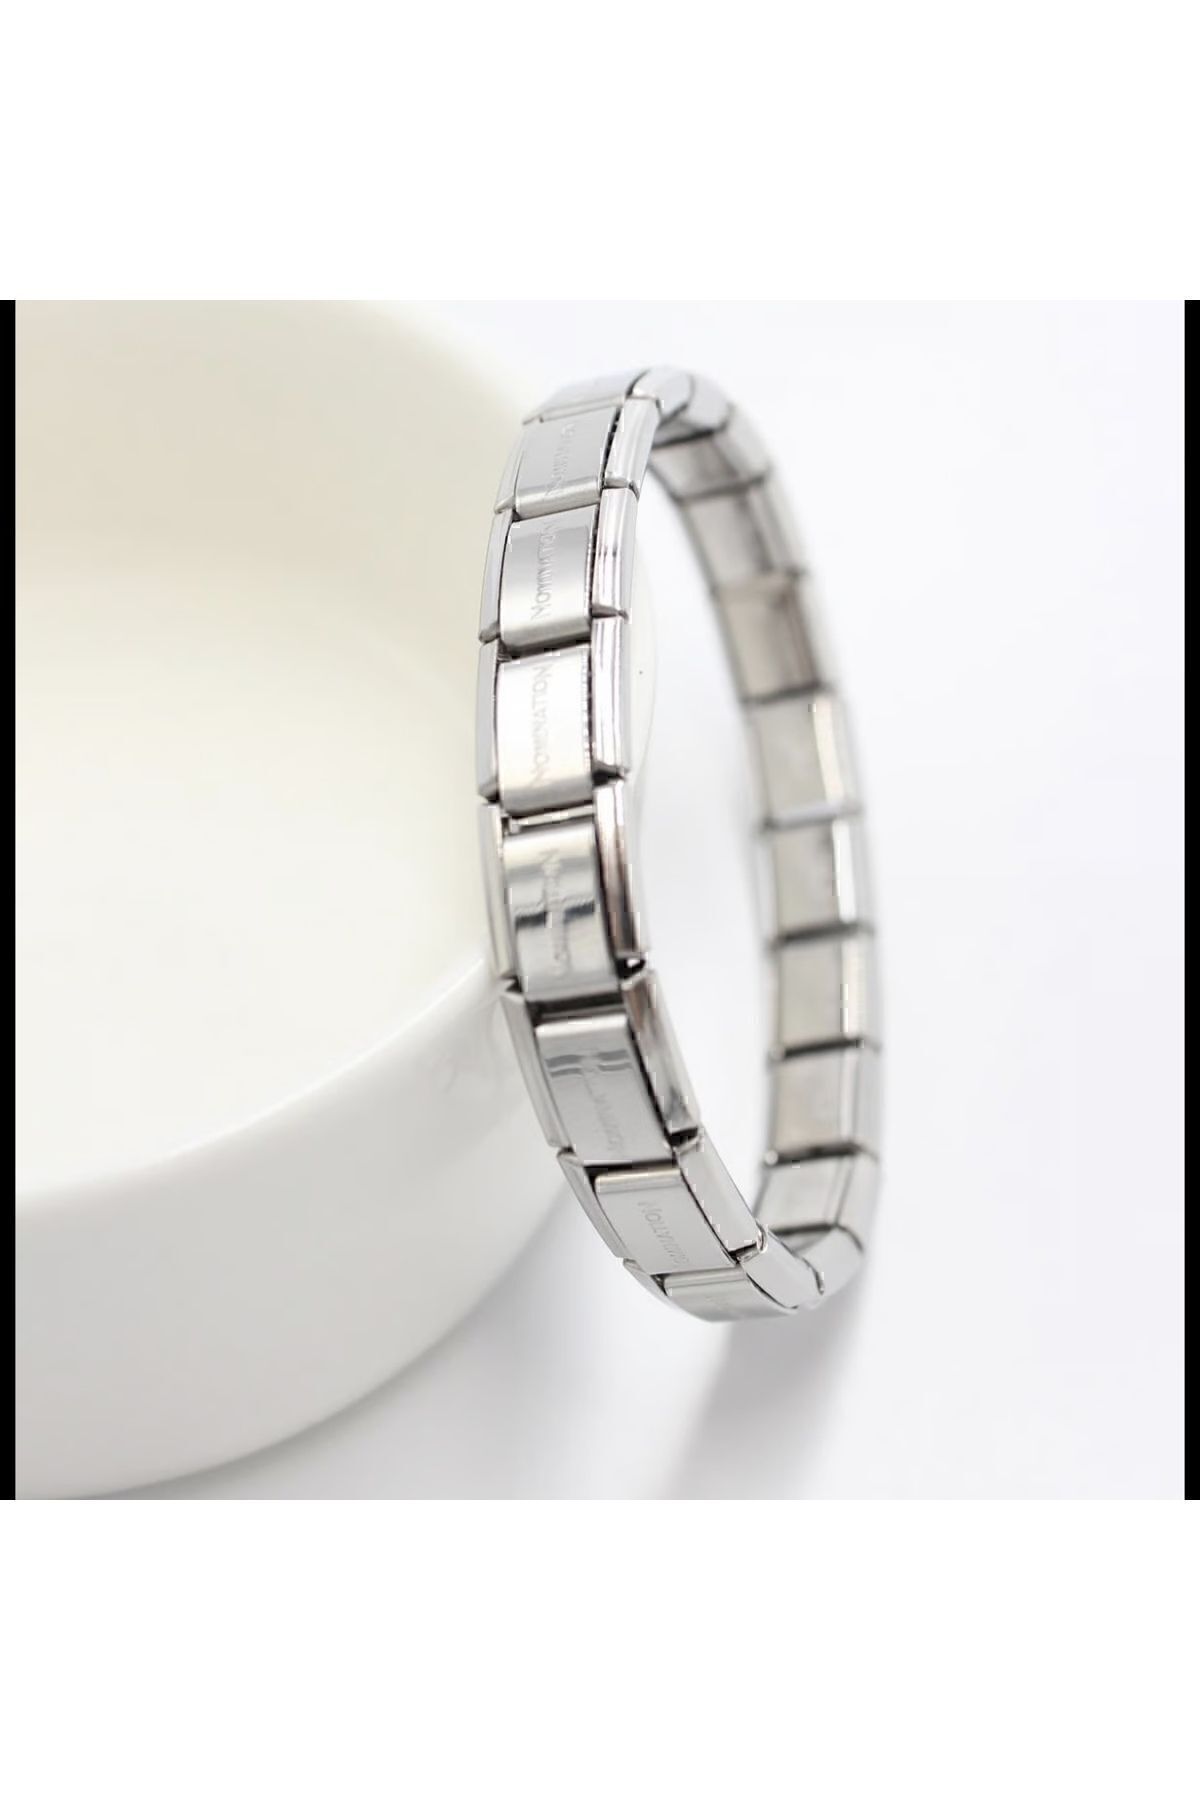 shesra 18 Cm Italian Charm Silver Detailed Nomination Model Stainless Steel Bracelet